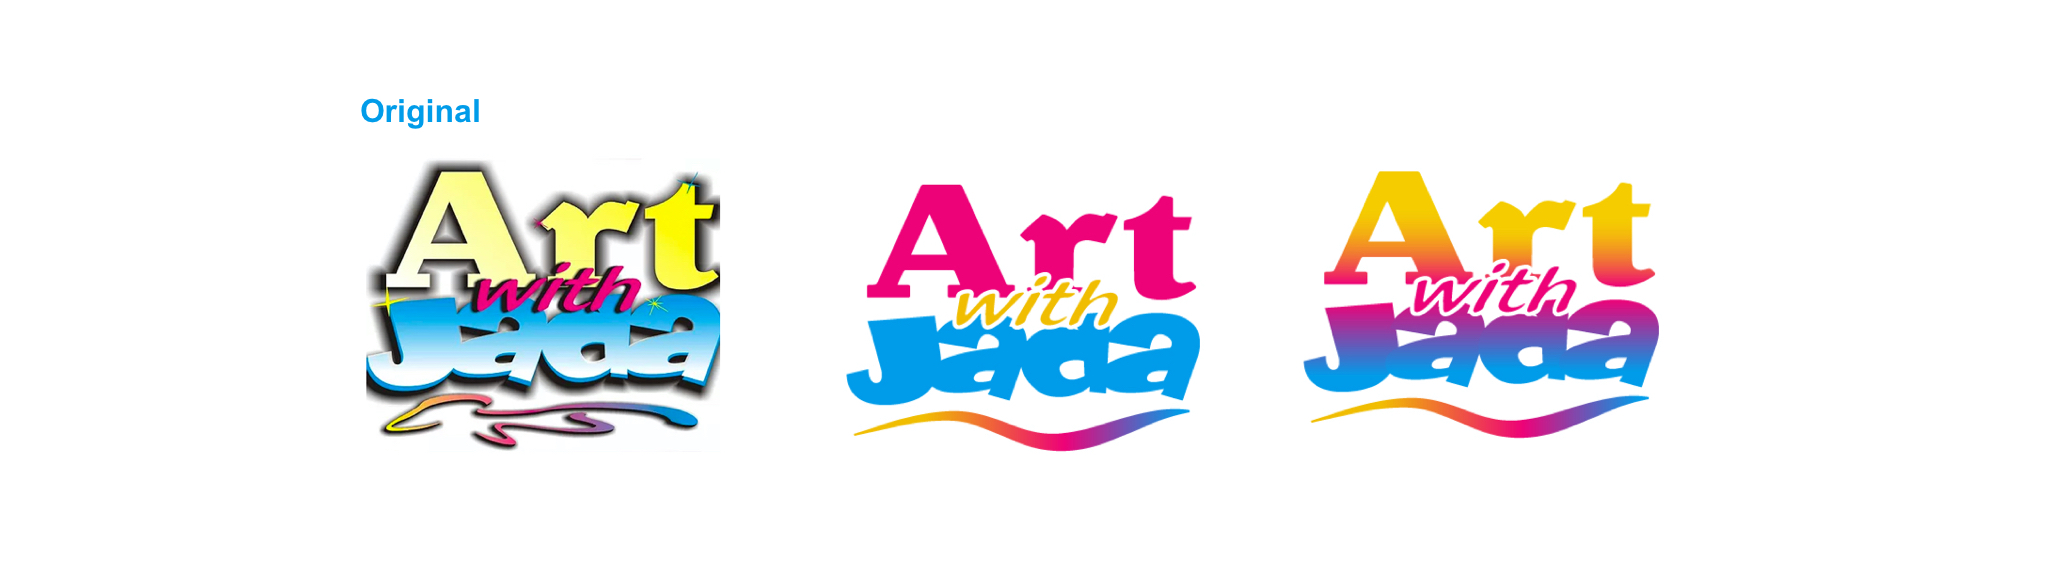 AWJ Logo